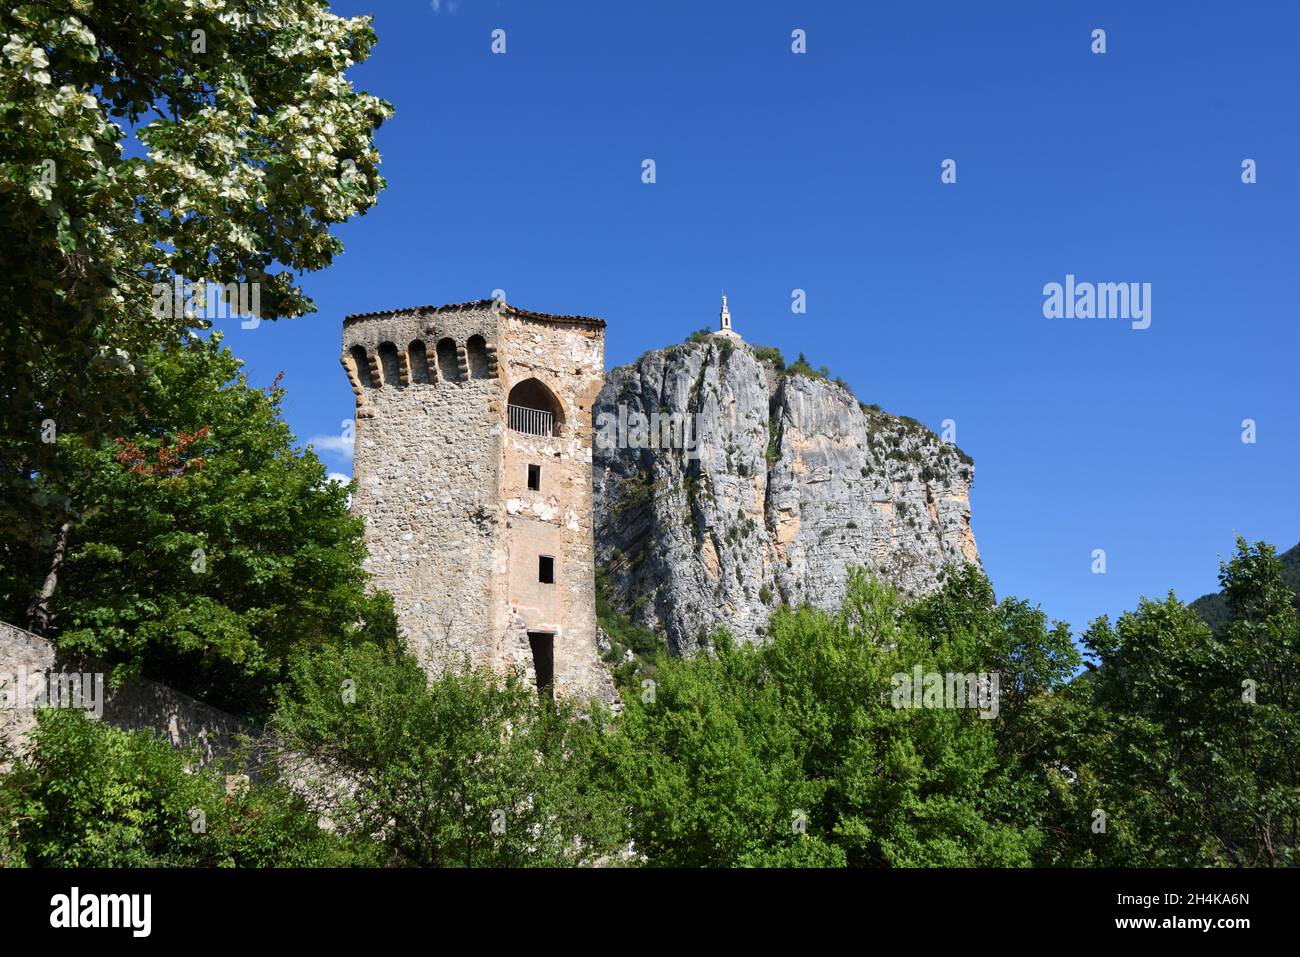 Mittelalterlicher sechseckiger Steinturm, Teil der Altstadtmauer von Castellane, Kapelle und Felsen von Castellane, Alpes-de-Hate-Provence Provence Frankreich Stockfoto